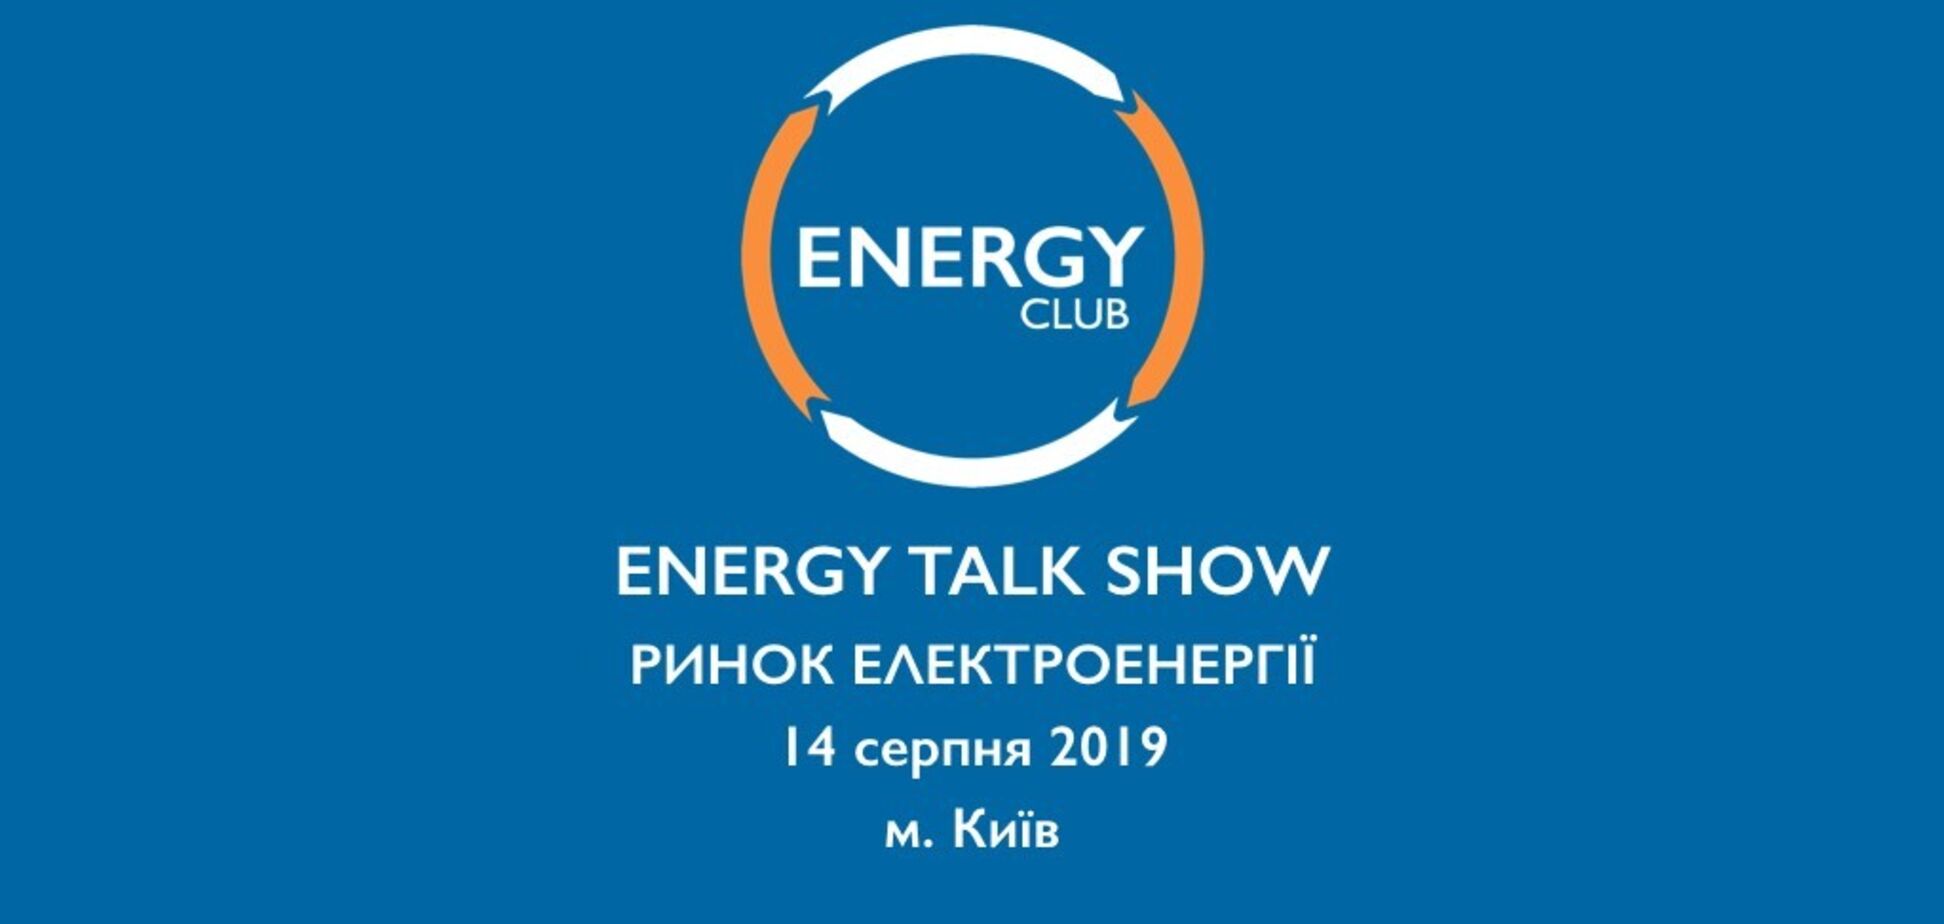 В Украине проведут Energy Talk Show: что и где будут обсуждать